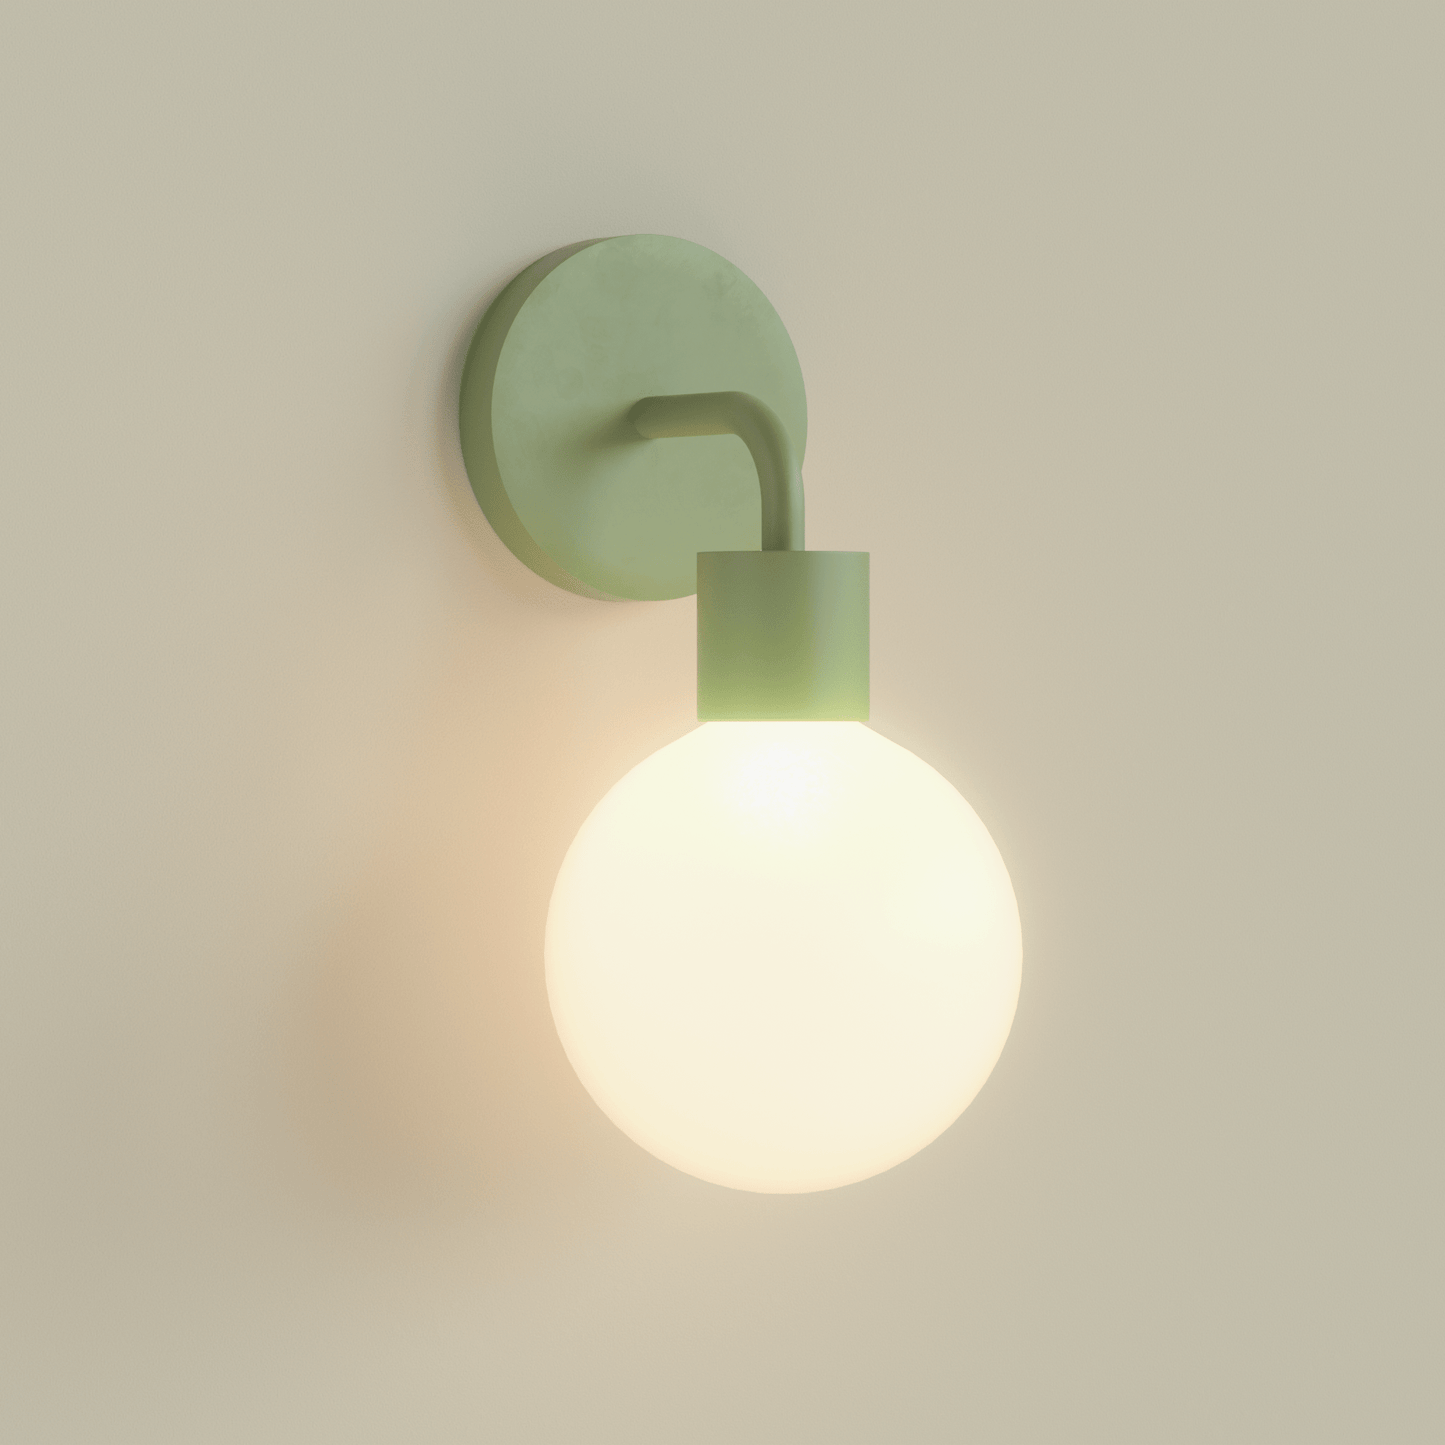 Poplight Wall Light